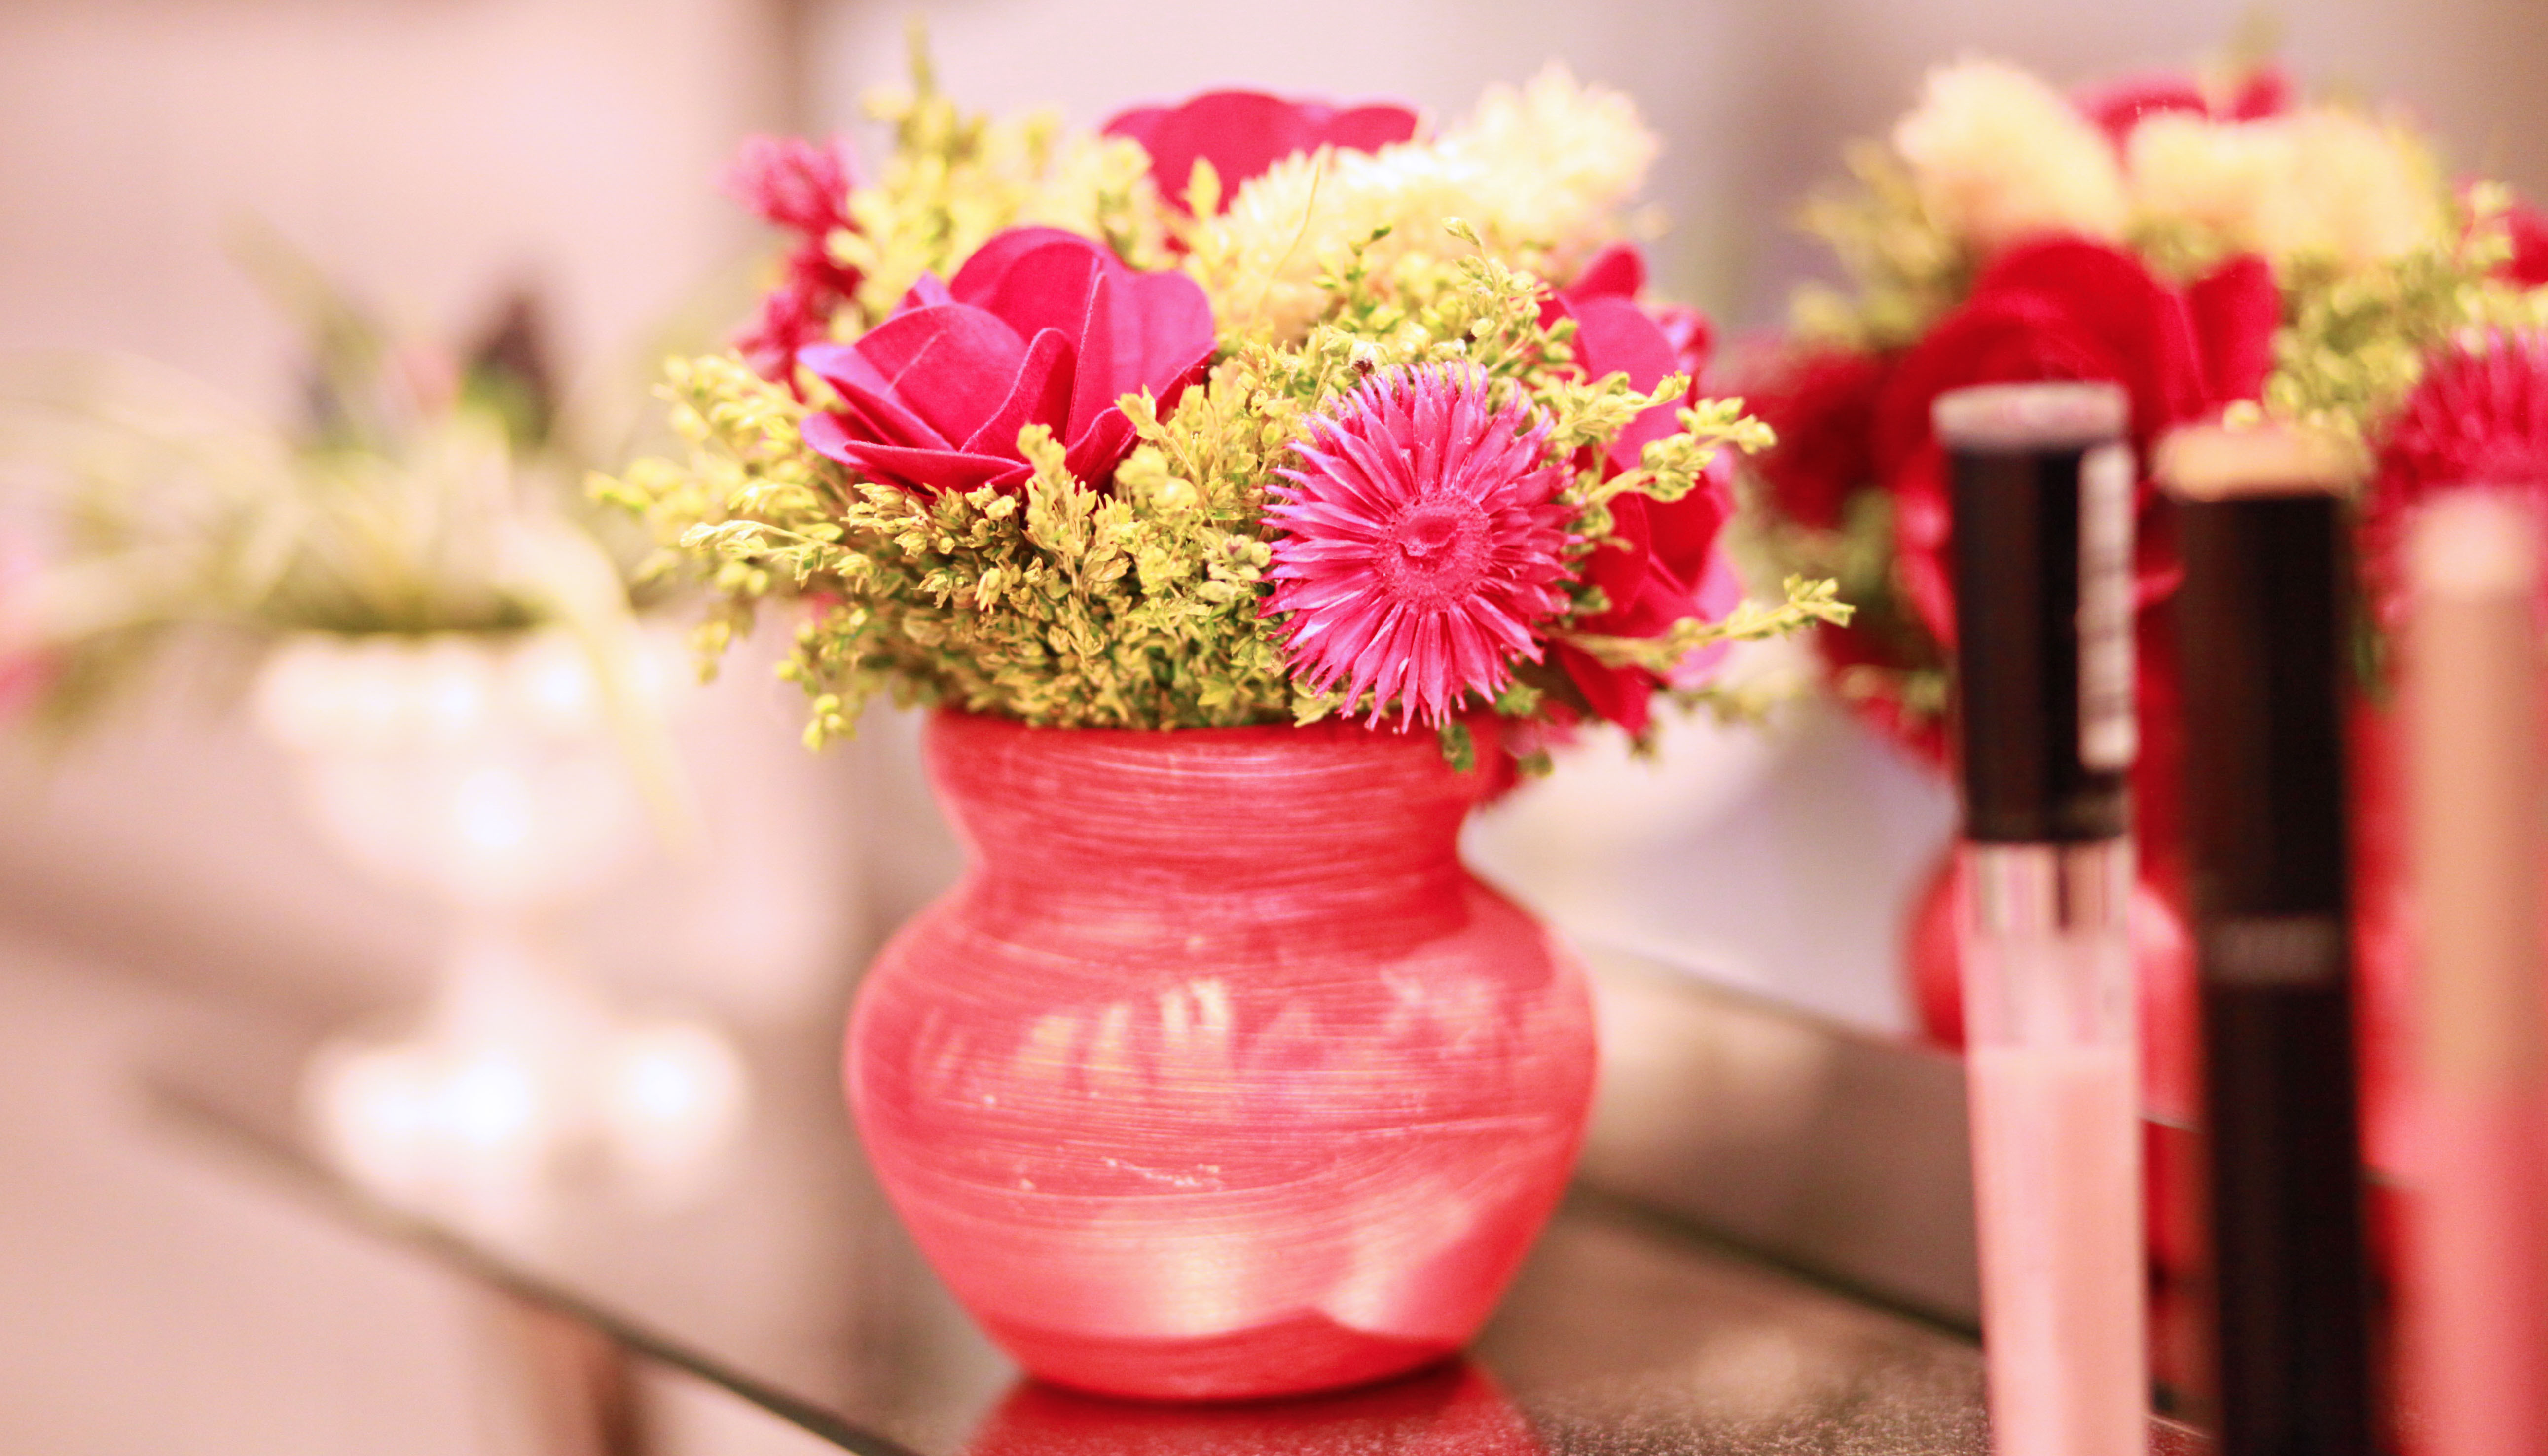 Картинка с цветами на столе. Цветы в вазе. Вазы с цветами. Цветочки в вазе. Ваза с цветами на столе.